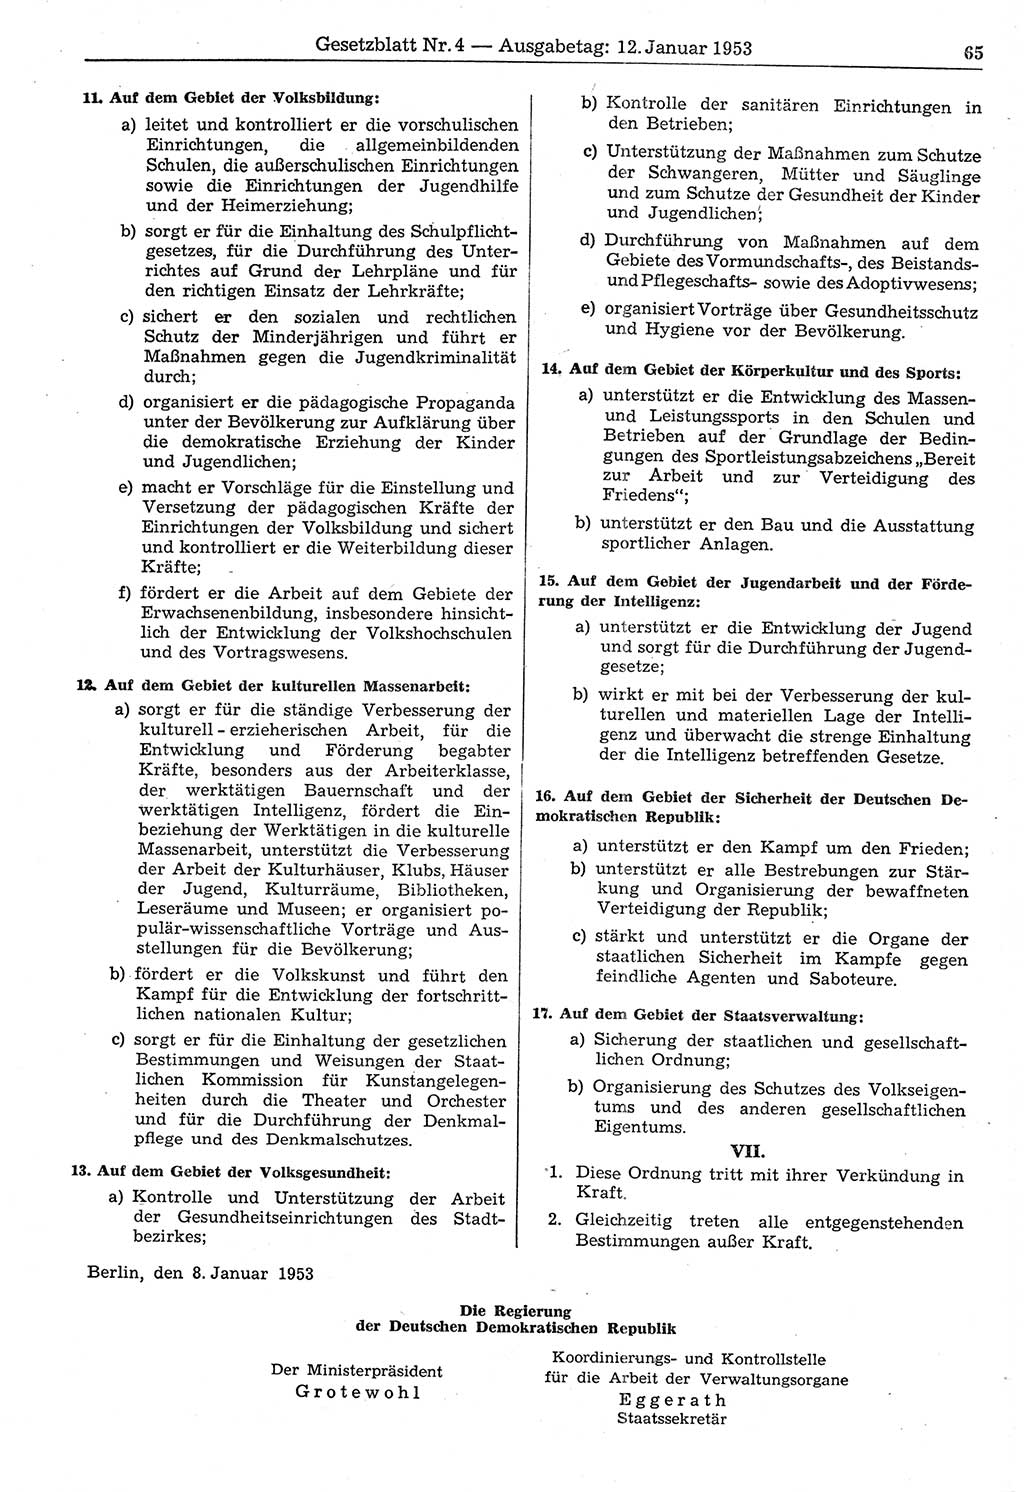 Gesetzblatt (GBl.) der Deutschen Demokratischen Republik (DDR) 1953, Seite 65 (GBl. DDR 1953, S. 65)